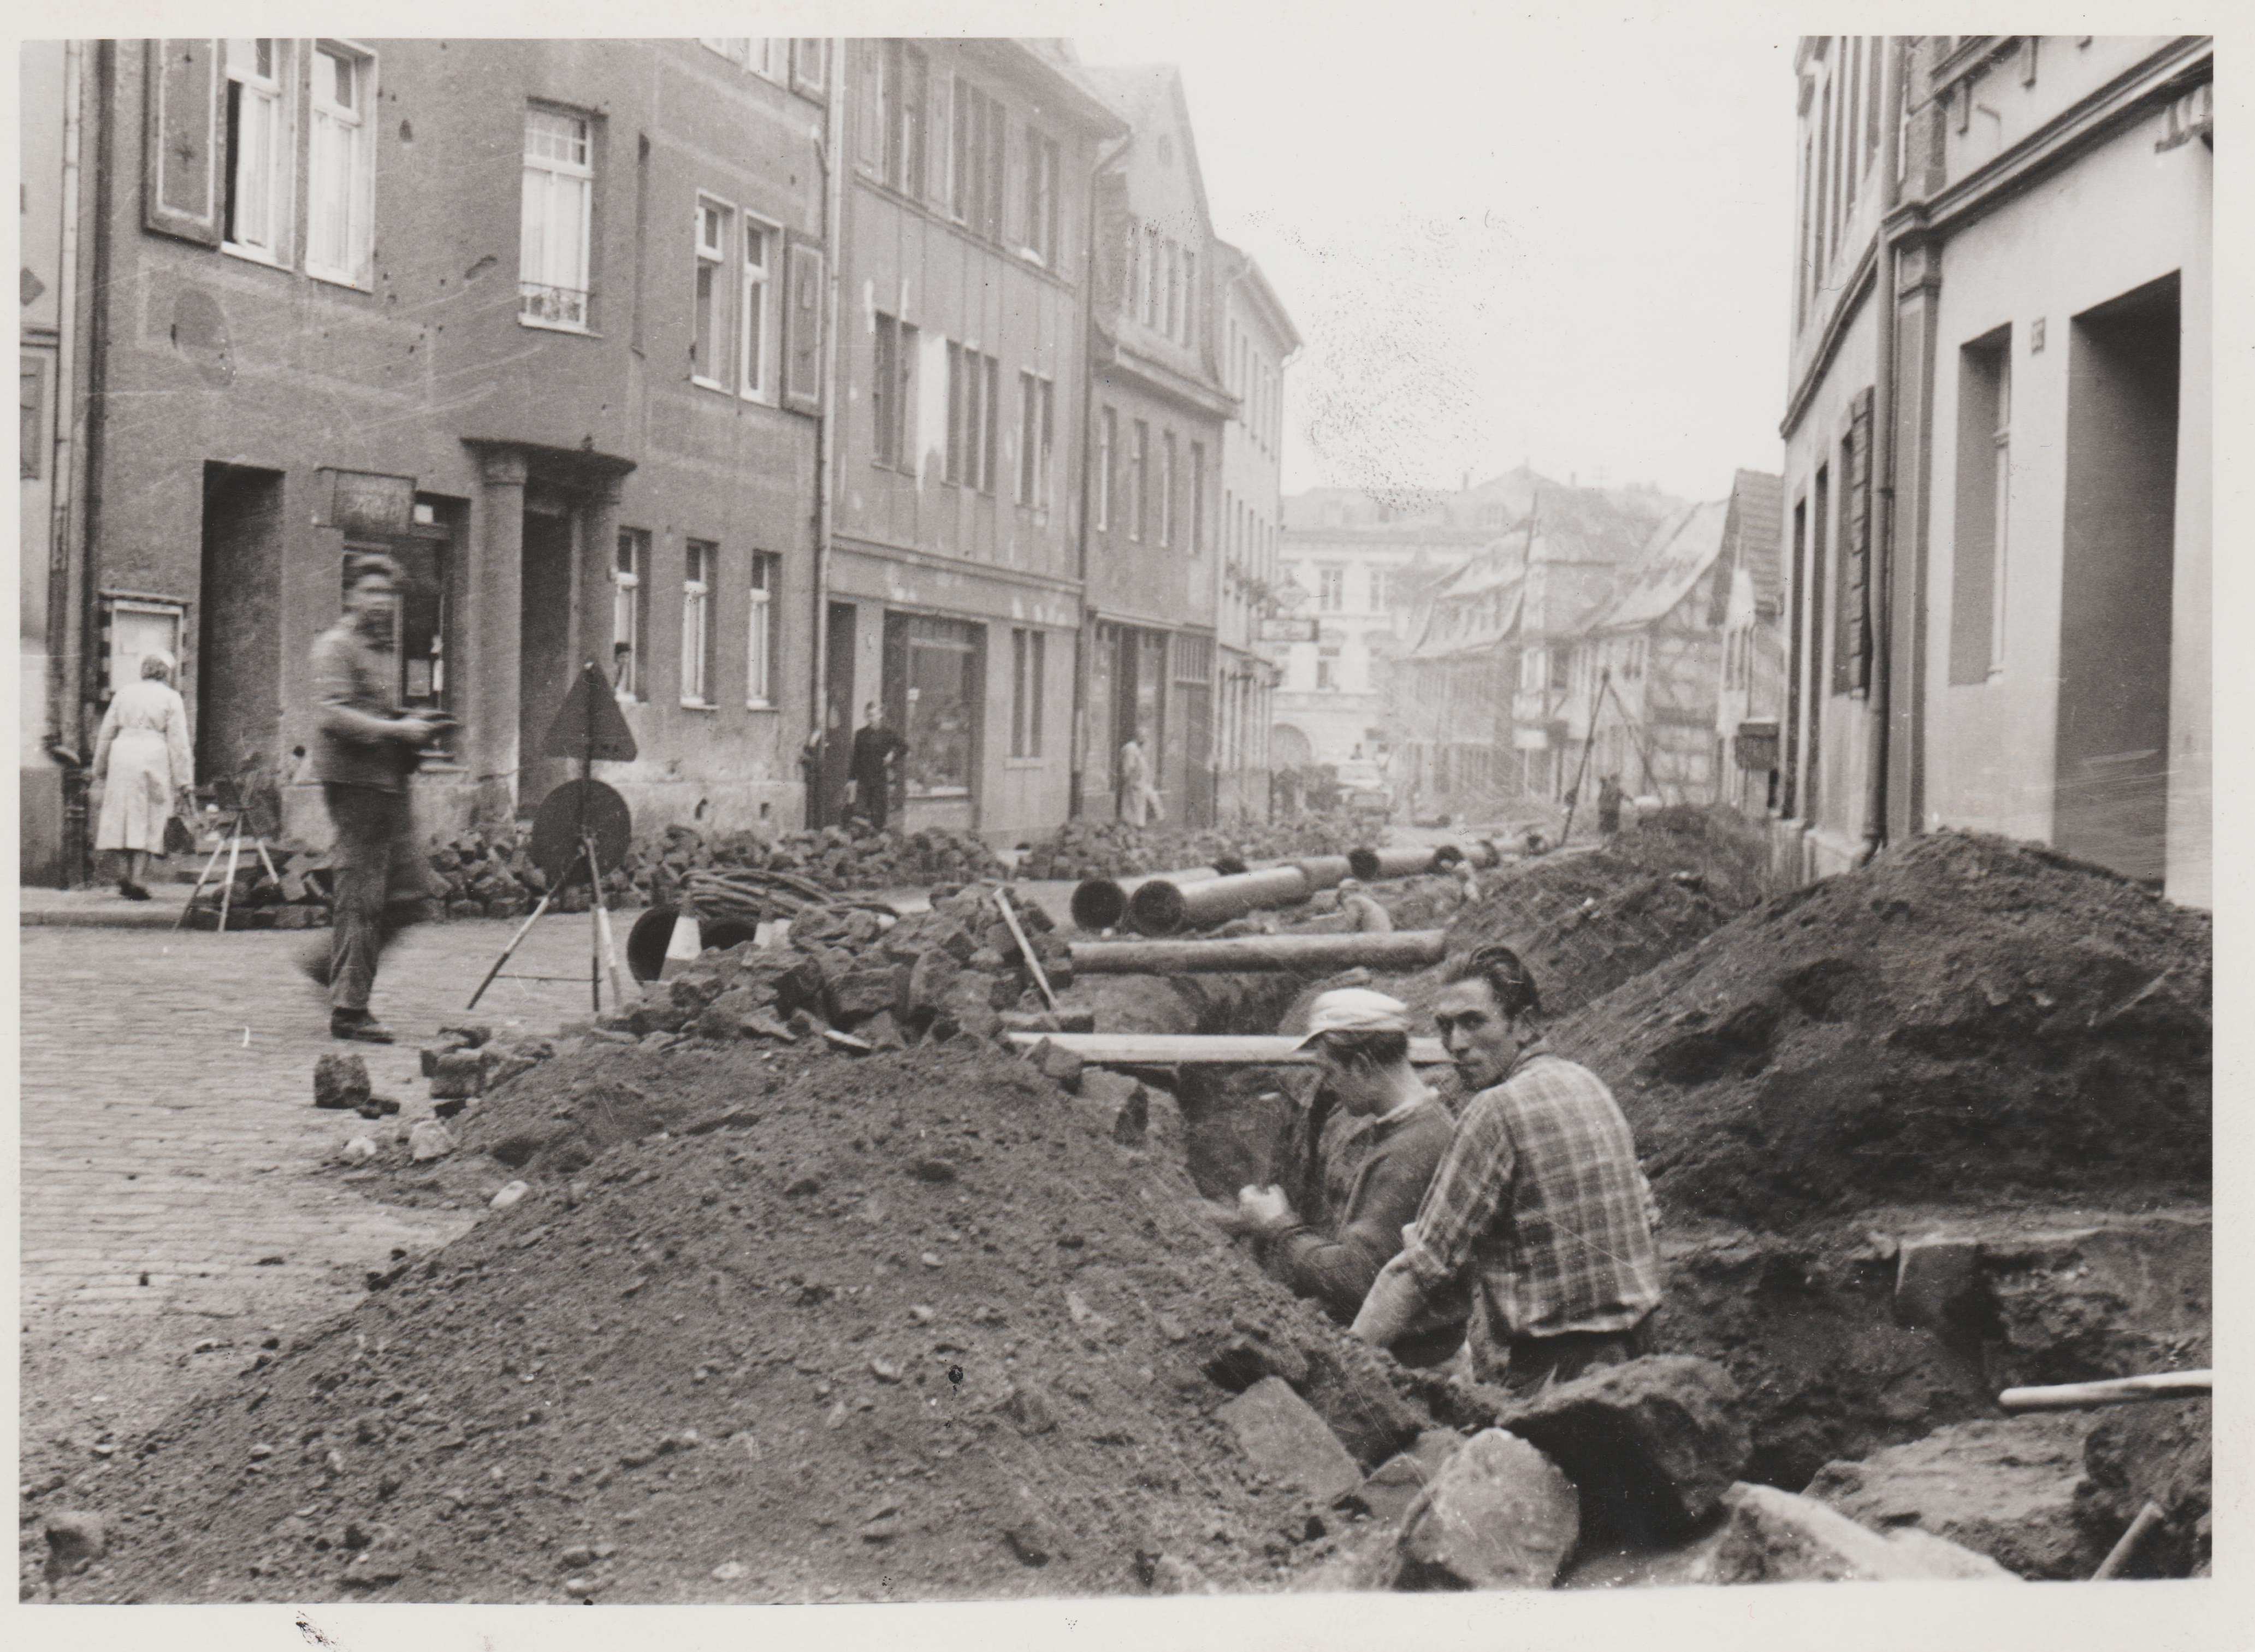 Bachstrasse in Bendorf, Erneuerung der Abwasserleitungen 1956 (REM CC BY-NC-SA)